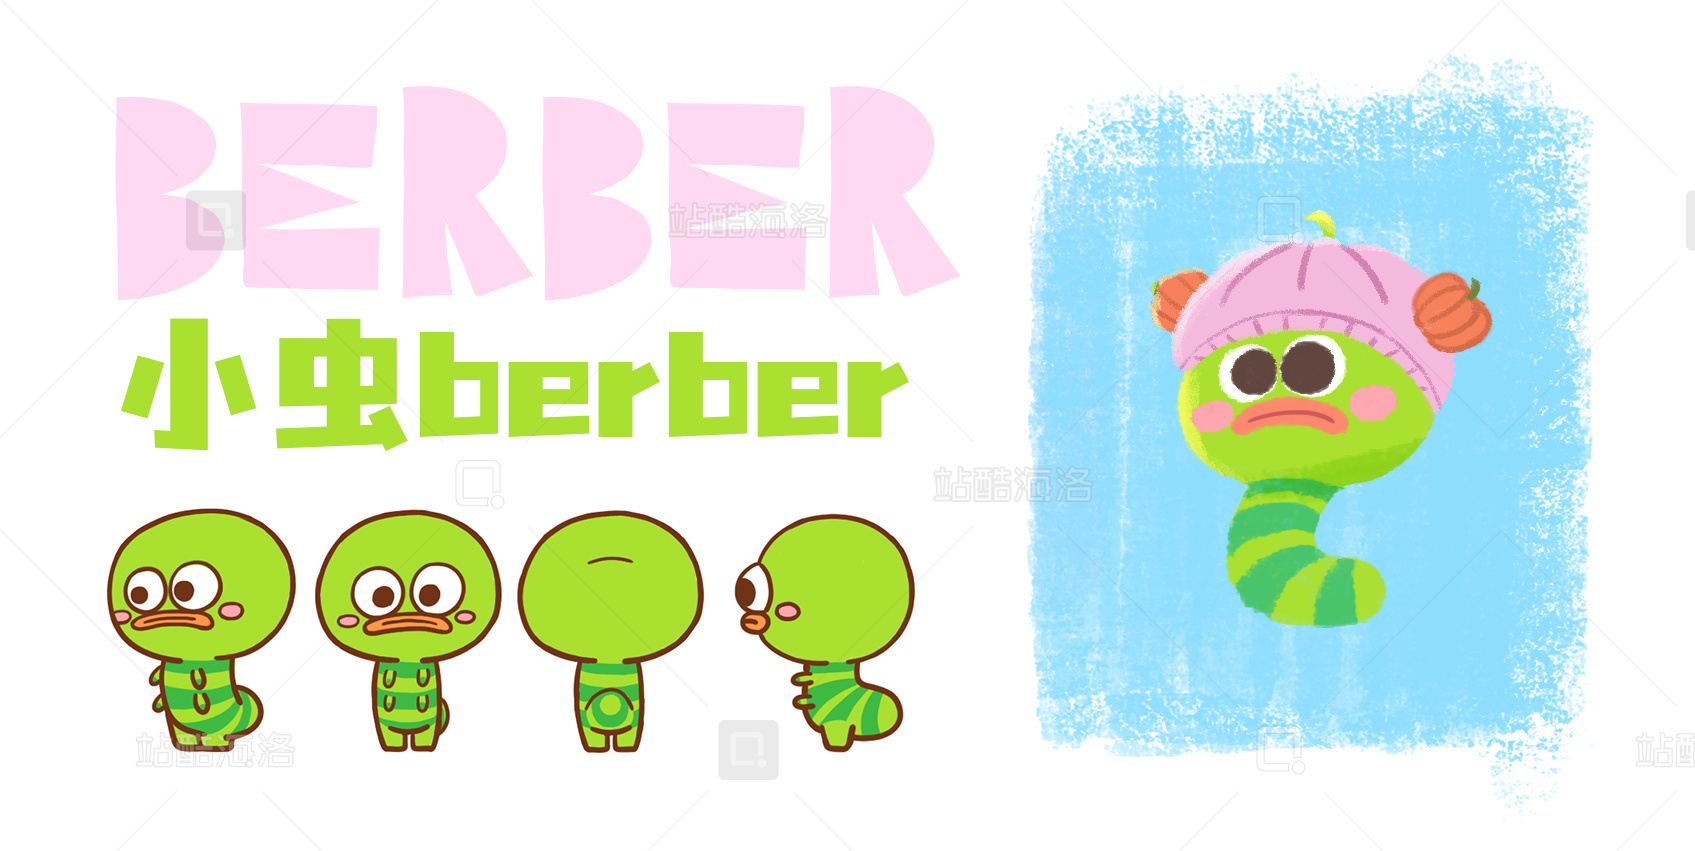 1小虫berber概念设计及三视图.jpg